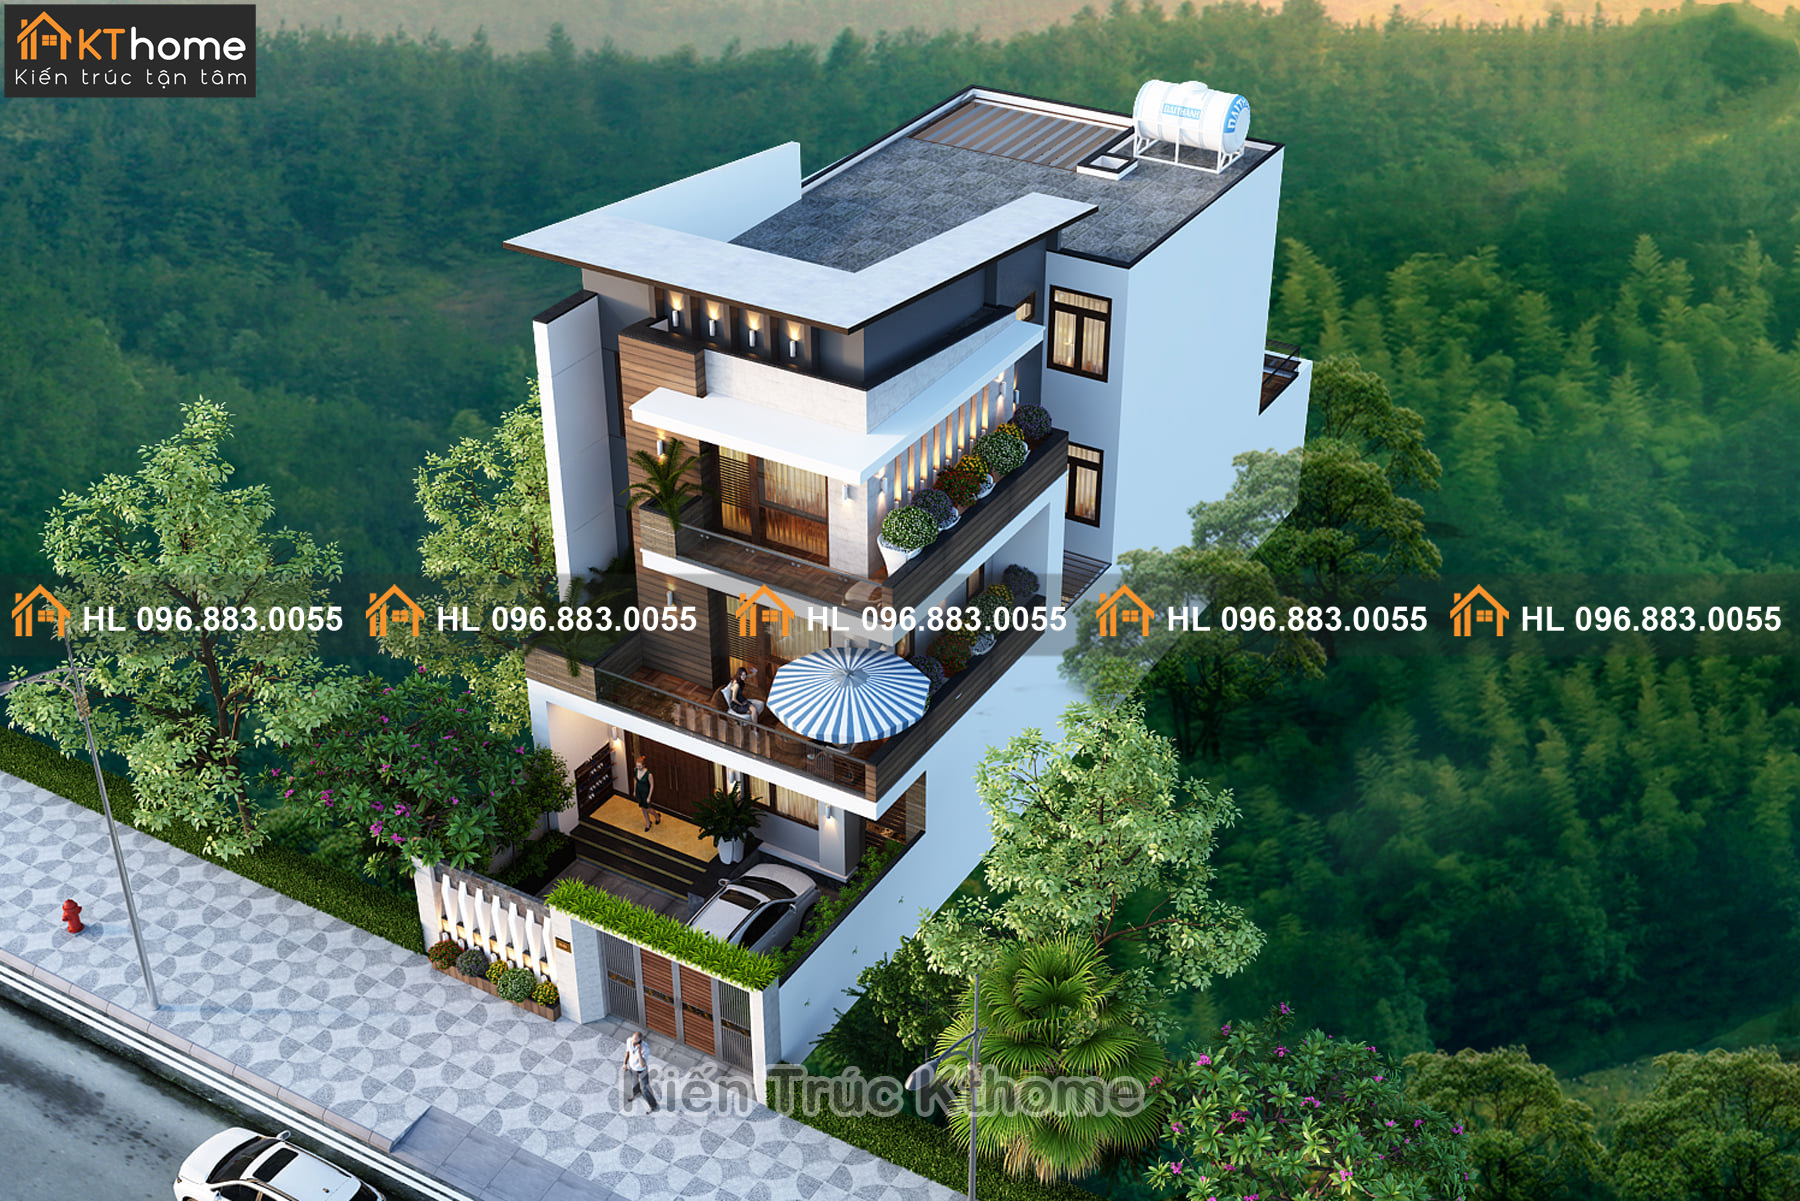 Mẫu biệt thự nhà phố 3 tầng hiện đại 9,5mx14,5m đẹp và tiện nghi tại Hà Nội  KT506-2019